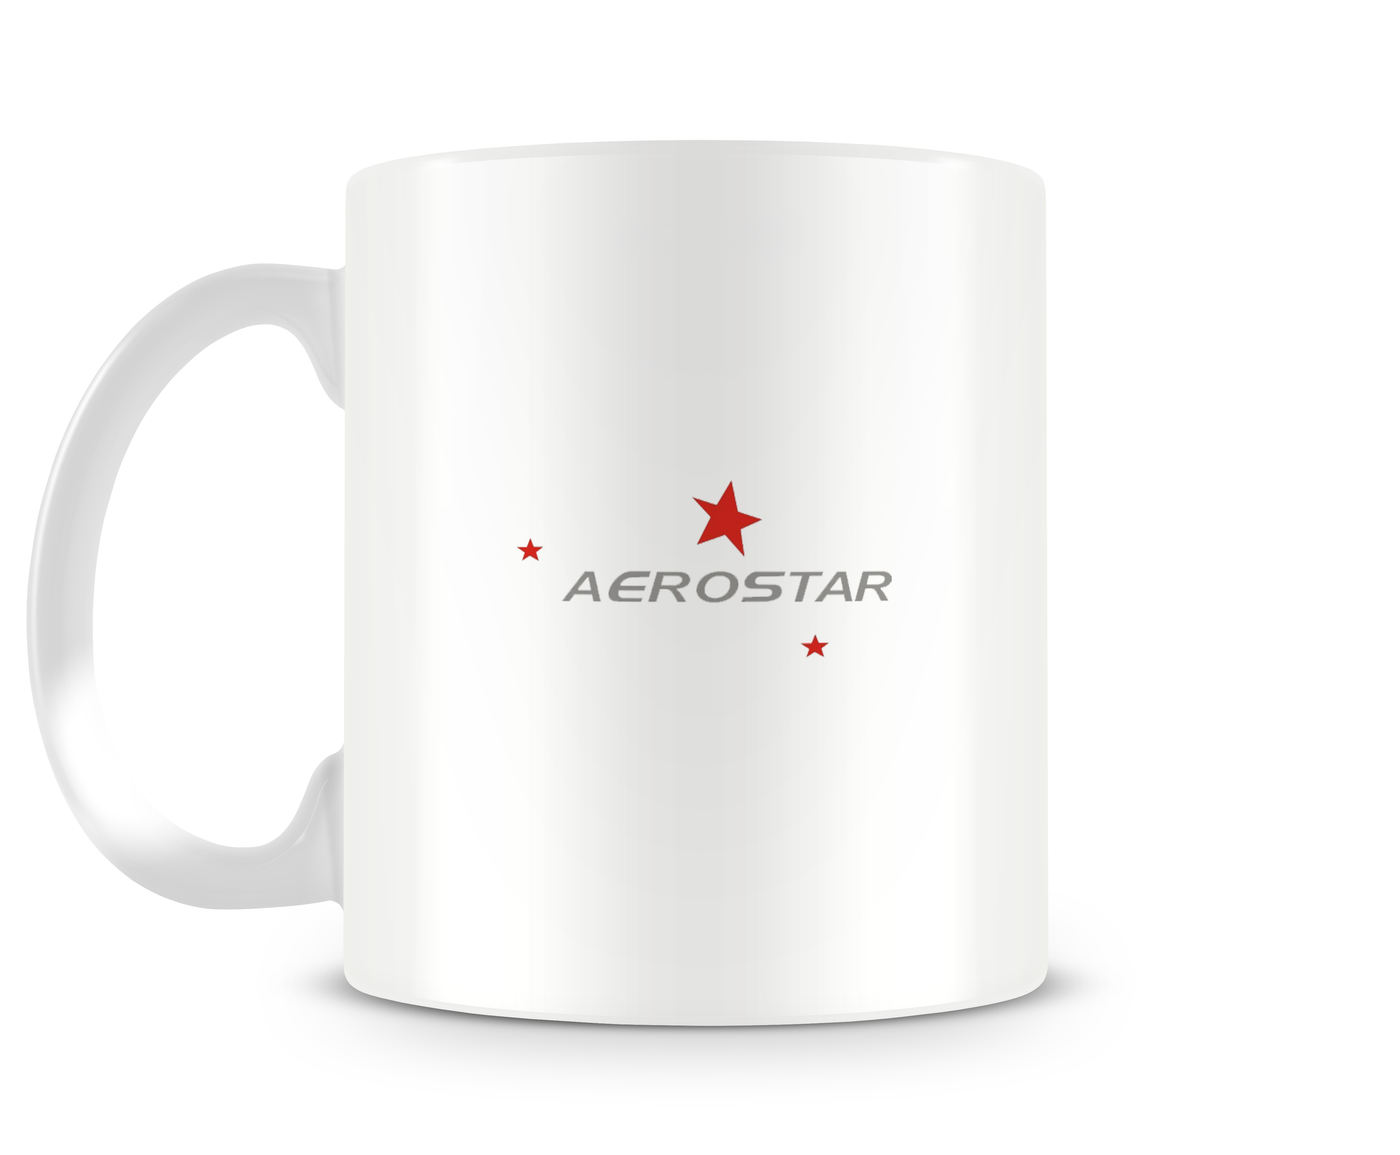 Piper Aerostar 700 Mug - Aircraft Mugs